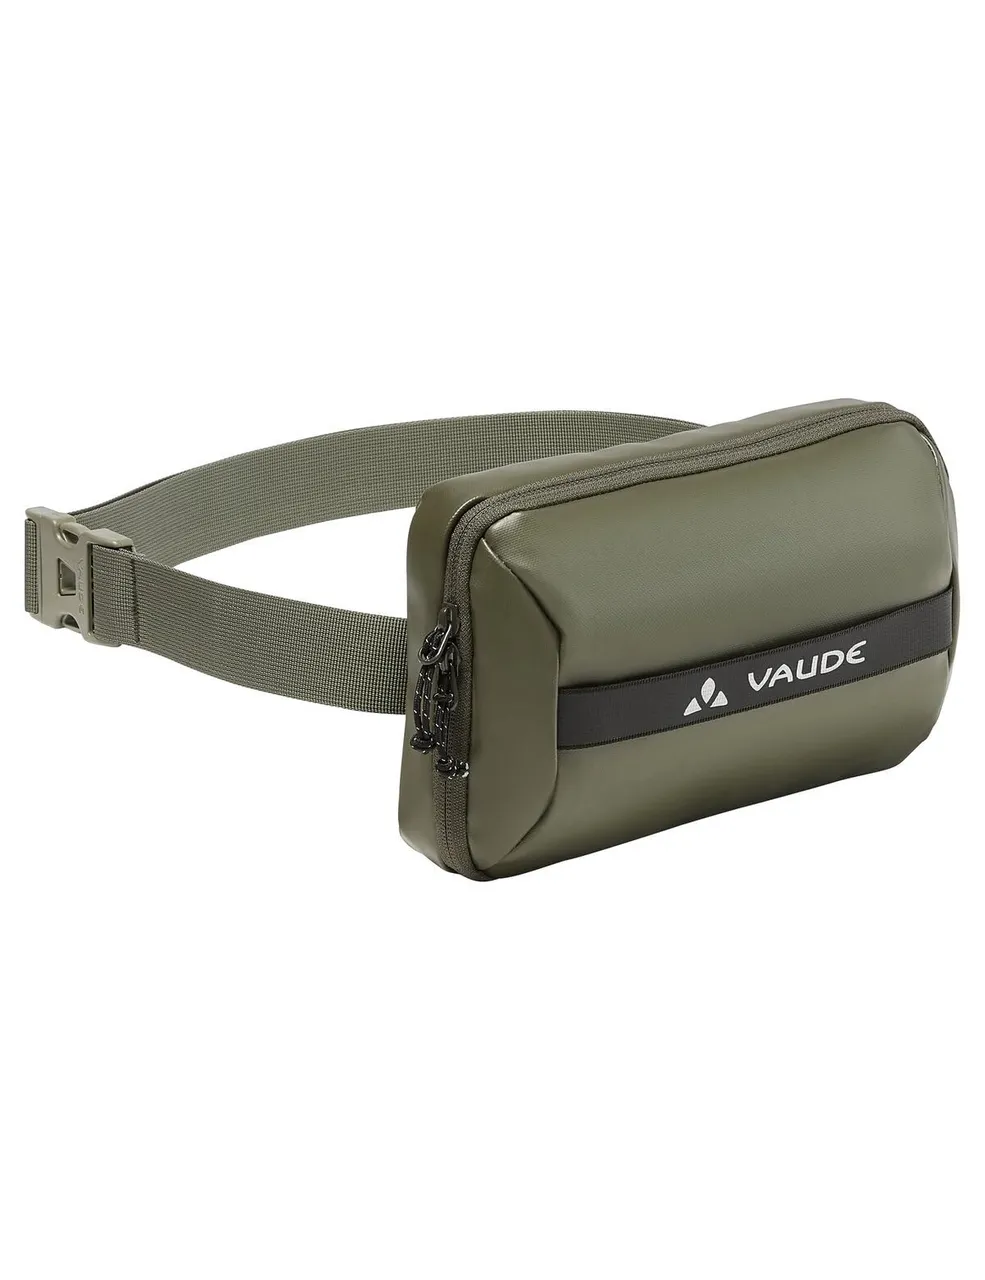 VAUDE Unisex's Mineo Tech Pouch Bags